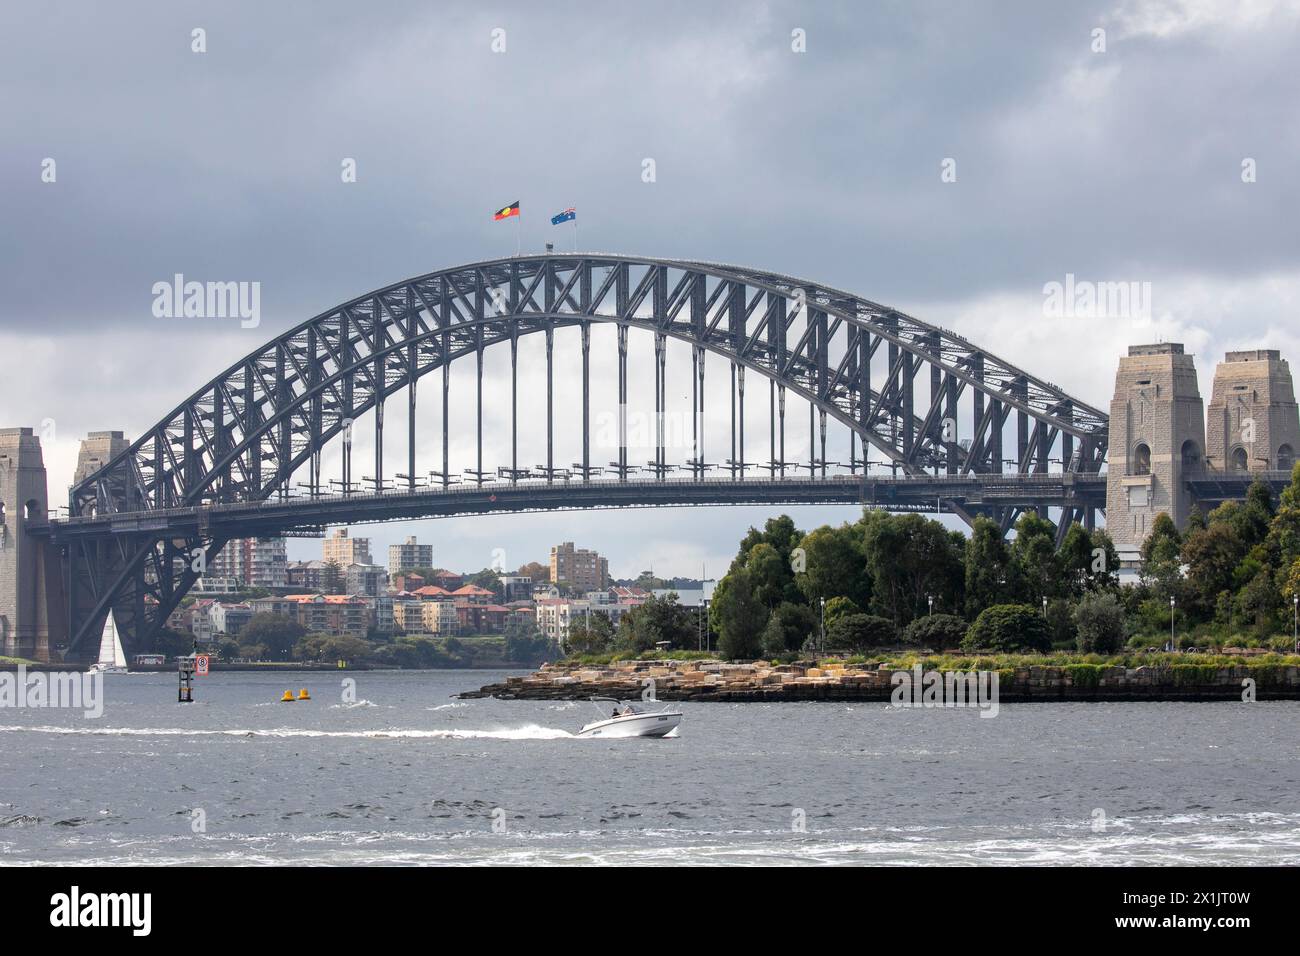 Die weltberühmte Sydney Harbour Bridge, die höchste Stahlbogenbrücke der Welt, wurde von der britischen Firma Dorman Long erbaut und 1932 in Sydney eröffnet Stockfoto